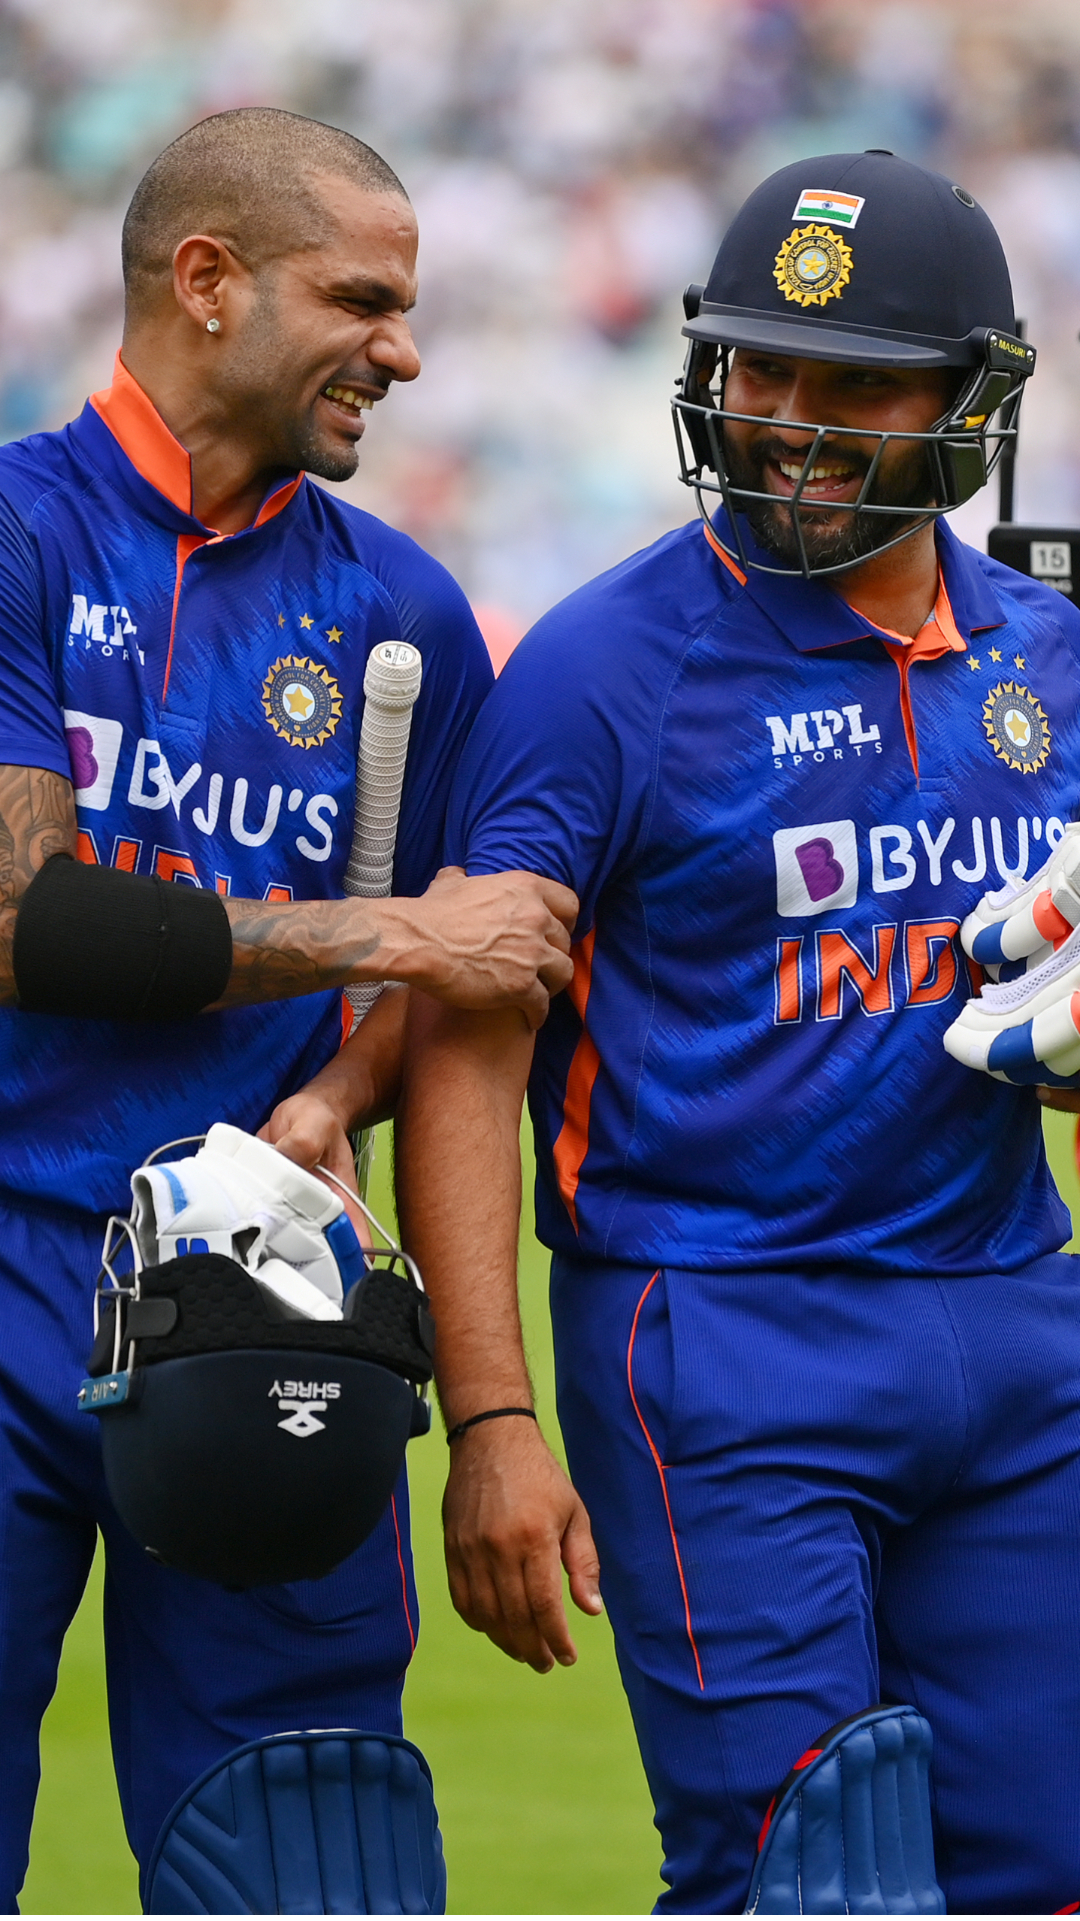 सेडन पार्क पर खेला जाएगा दूसरा वनडे, इस मैदान पर इन भारतीय बल्लेबाजों का रहा है जलवा